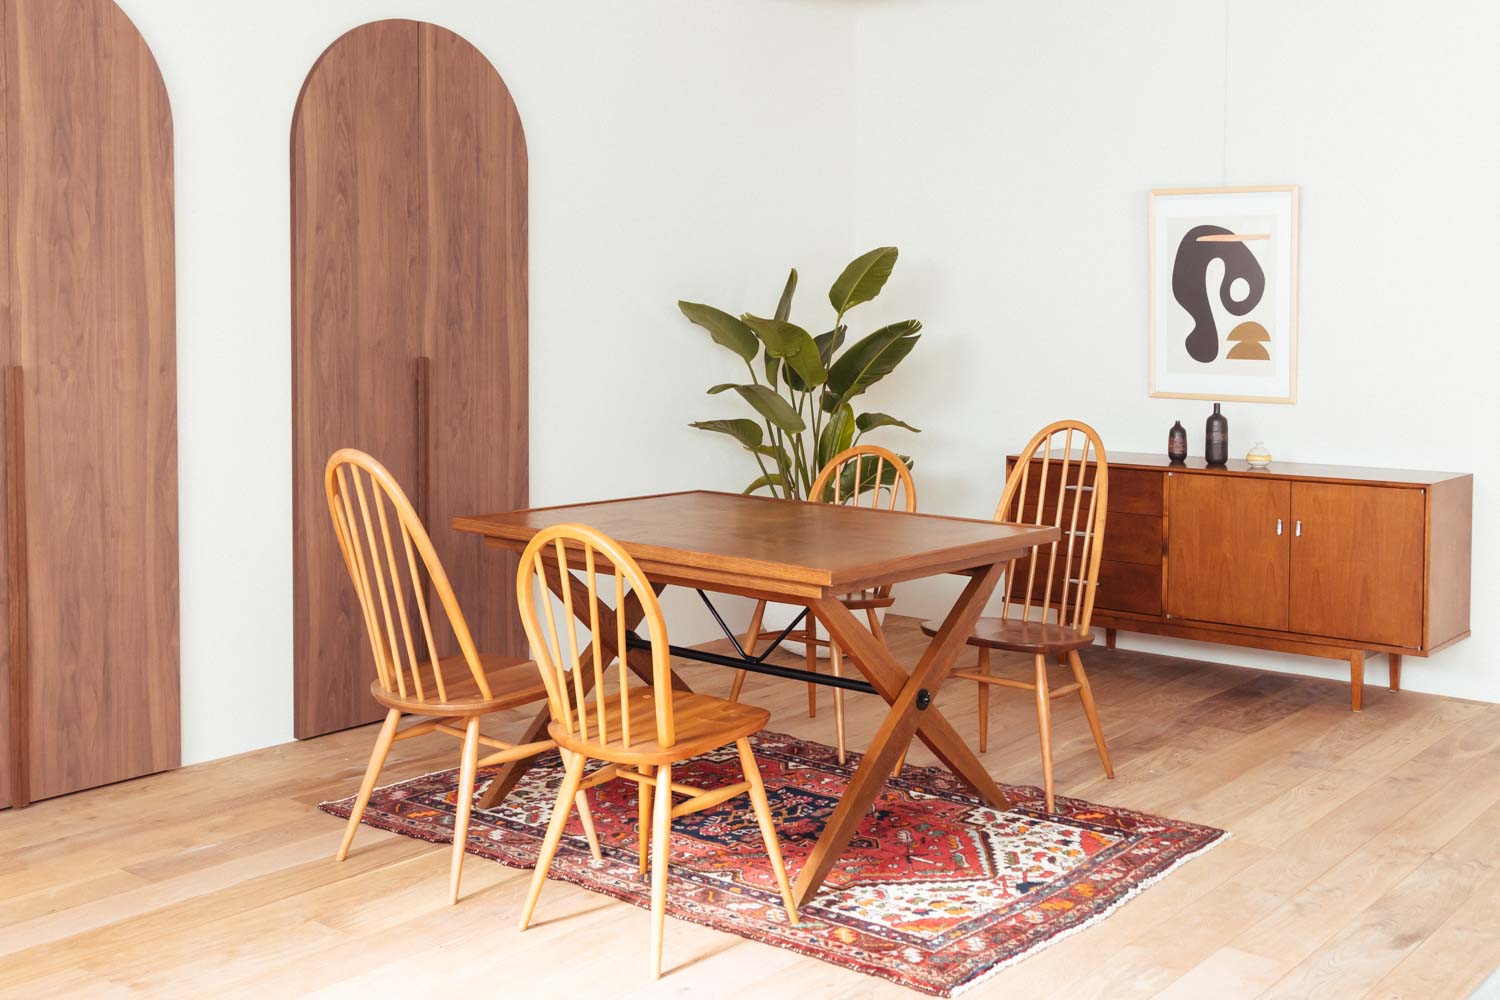 円形の木製ドアがあるフローリングの部屋に、木製テーブルと椅子4脚、観葉植物、チェストが配置された写真